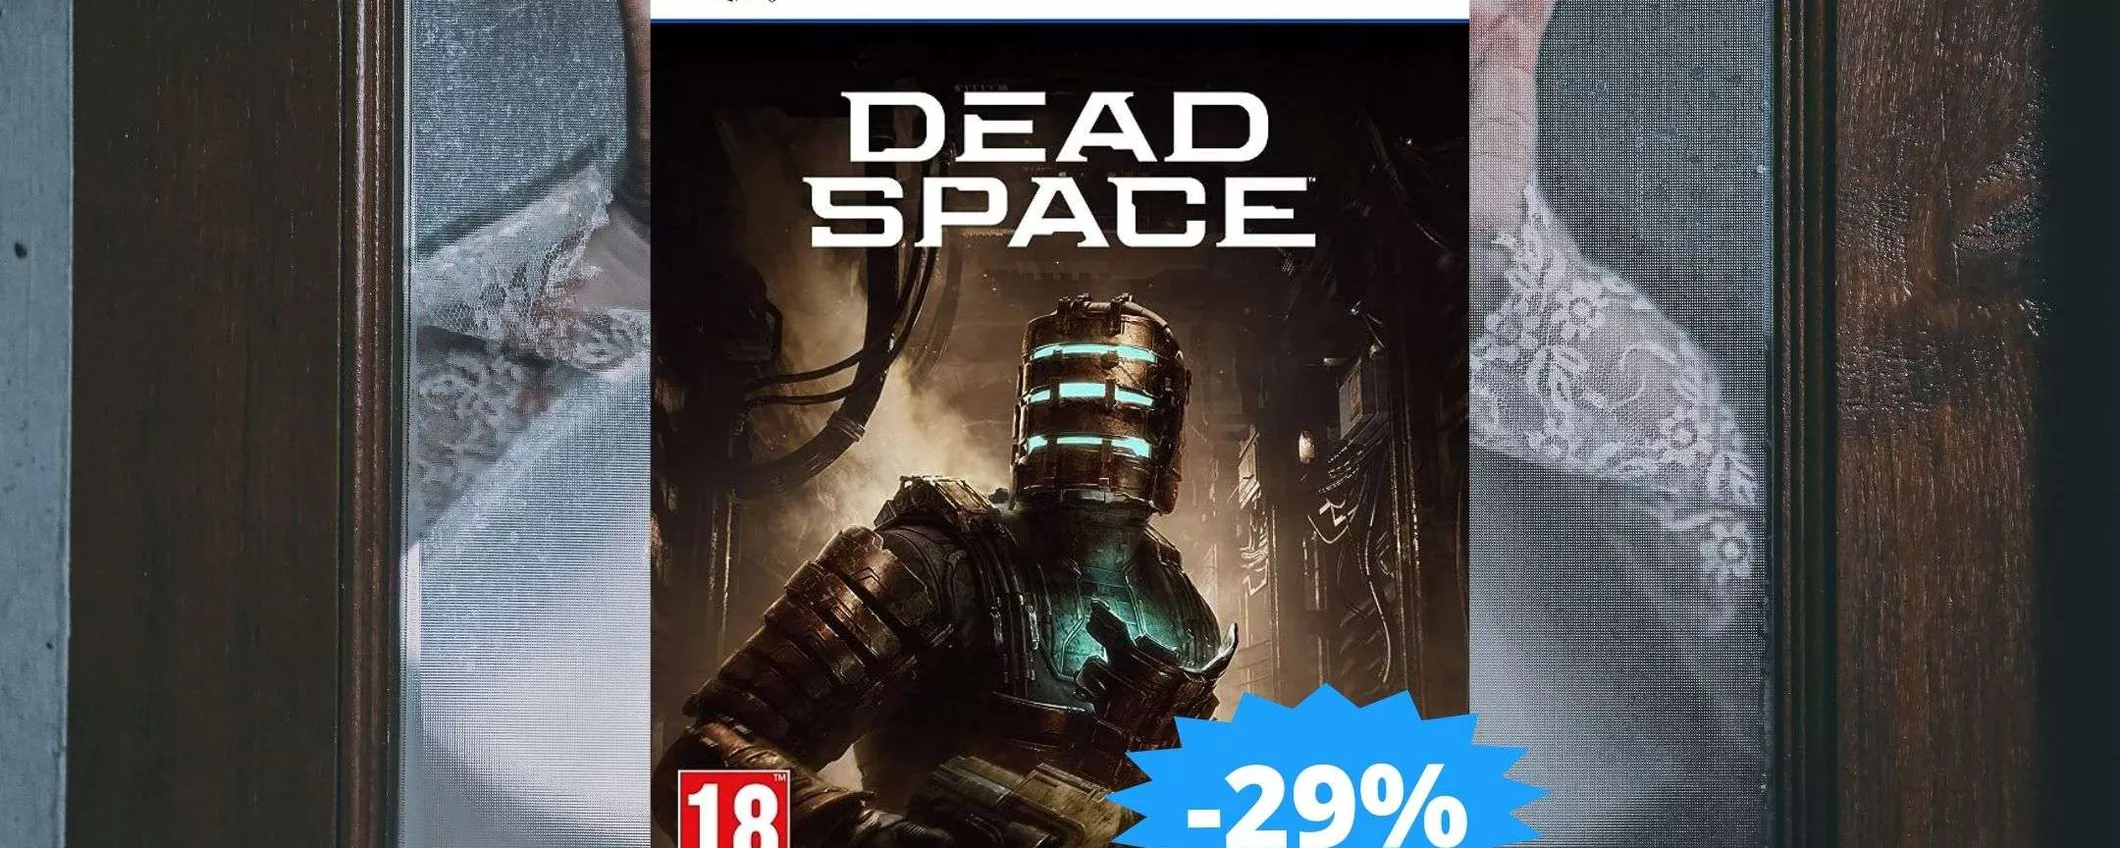 Dead Space per PS5: un AFFARE da non perdere (-29%)